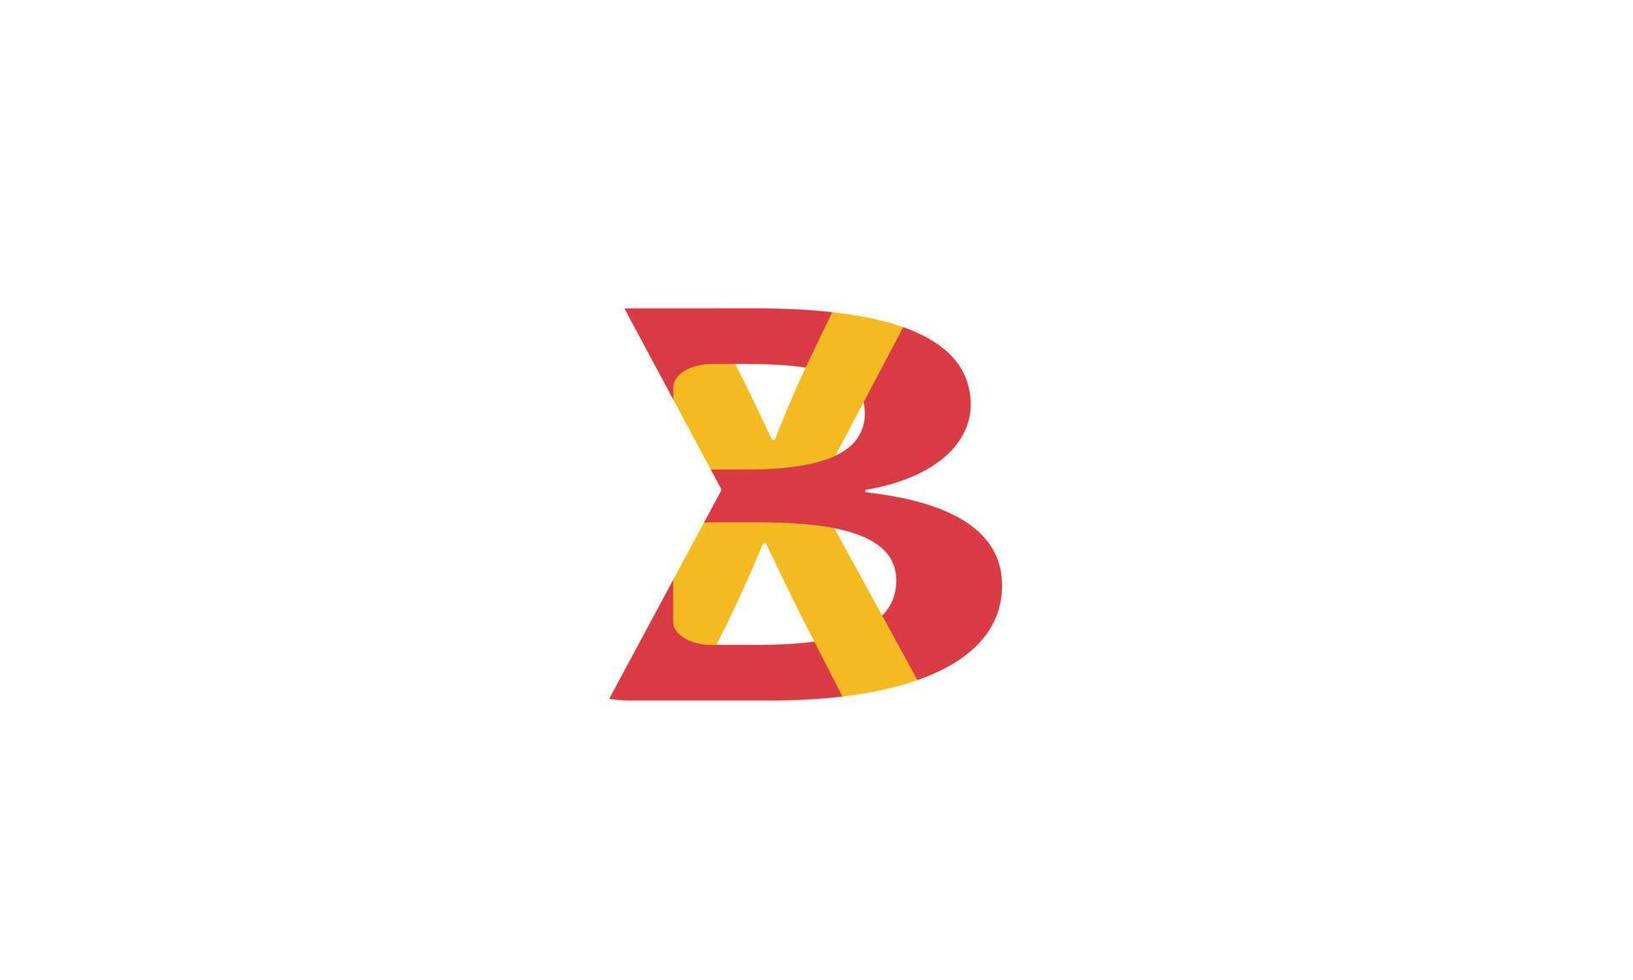 alfabeto letras iniciales monograma logo xb, bx, x y b vector